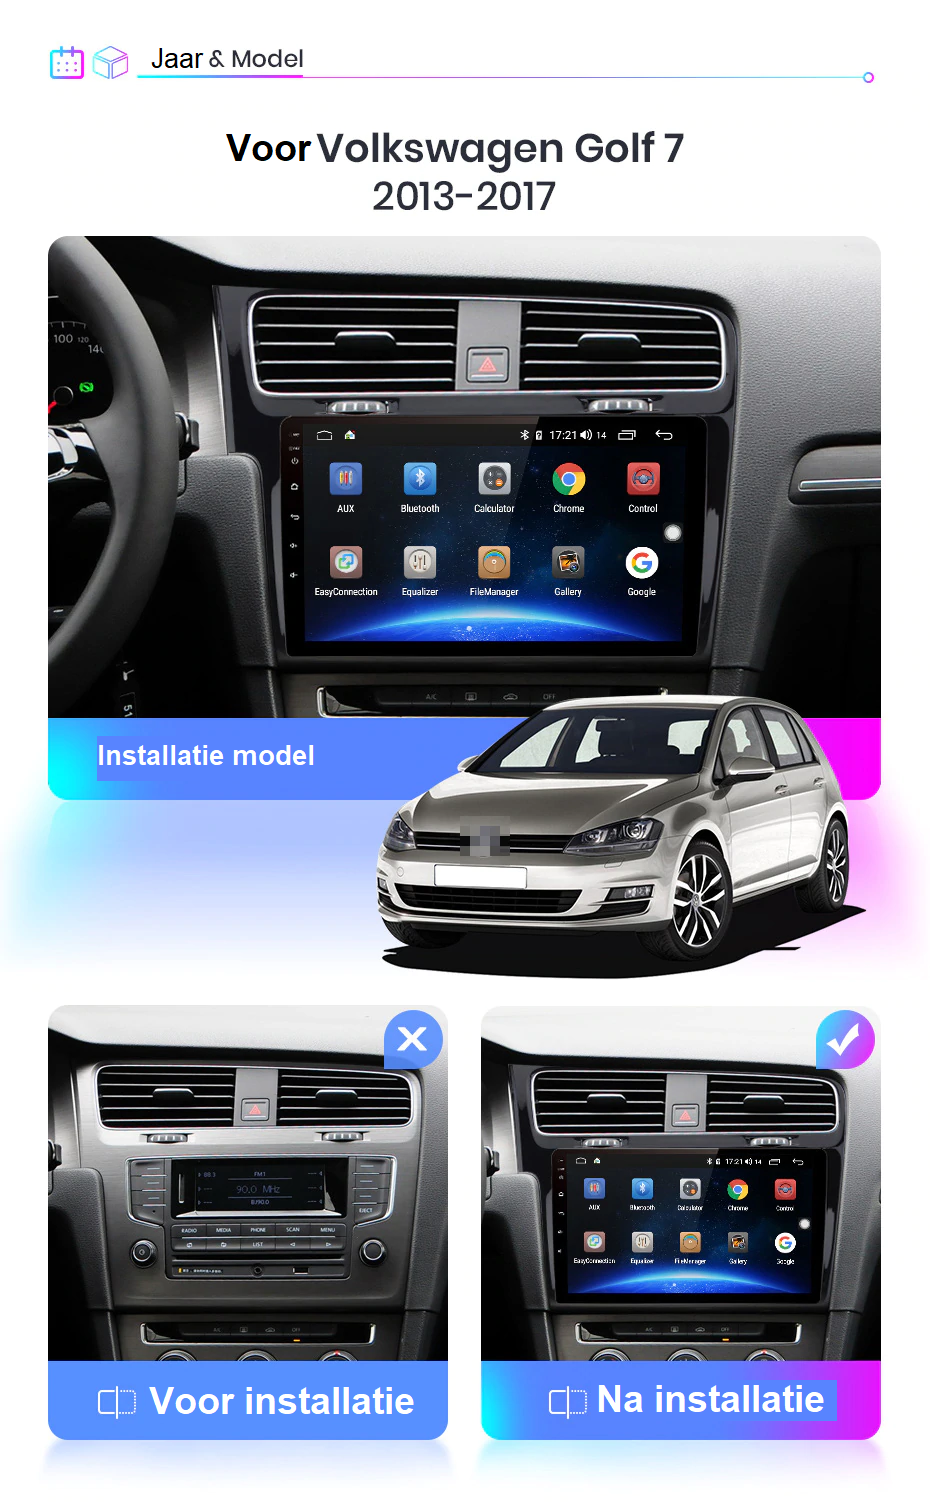 Miniatuur Ongepast Gelijkmatig VW Golf 7 navi multimedia android - Uw auto elektronica specialist